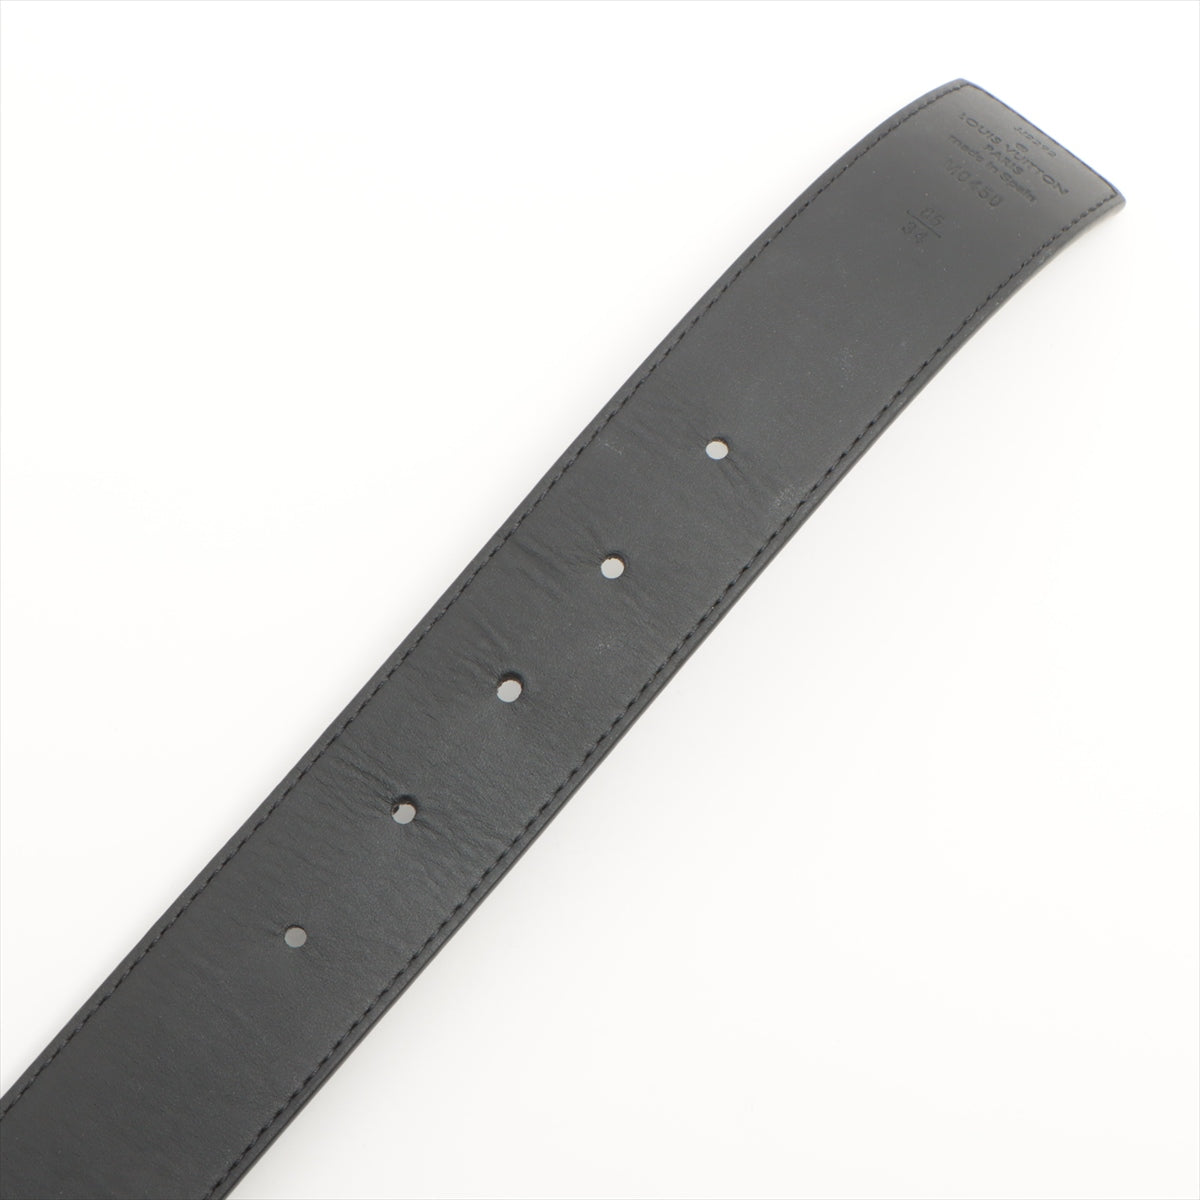 Louis Vuitton M0450 San Tulle LV Initiative JJ4202 Belt 85/34 PVC & leather Black